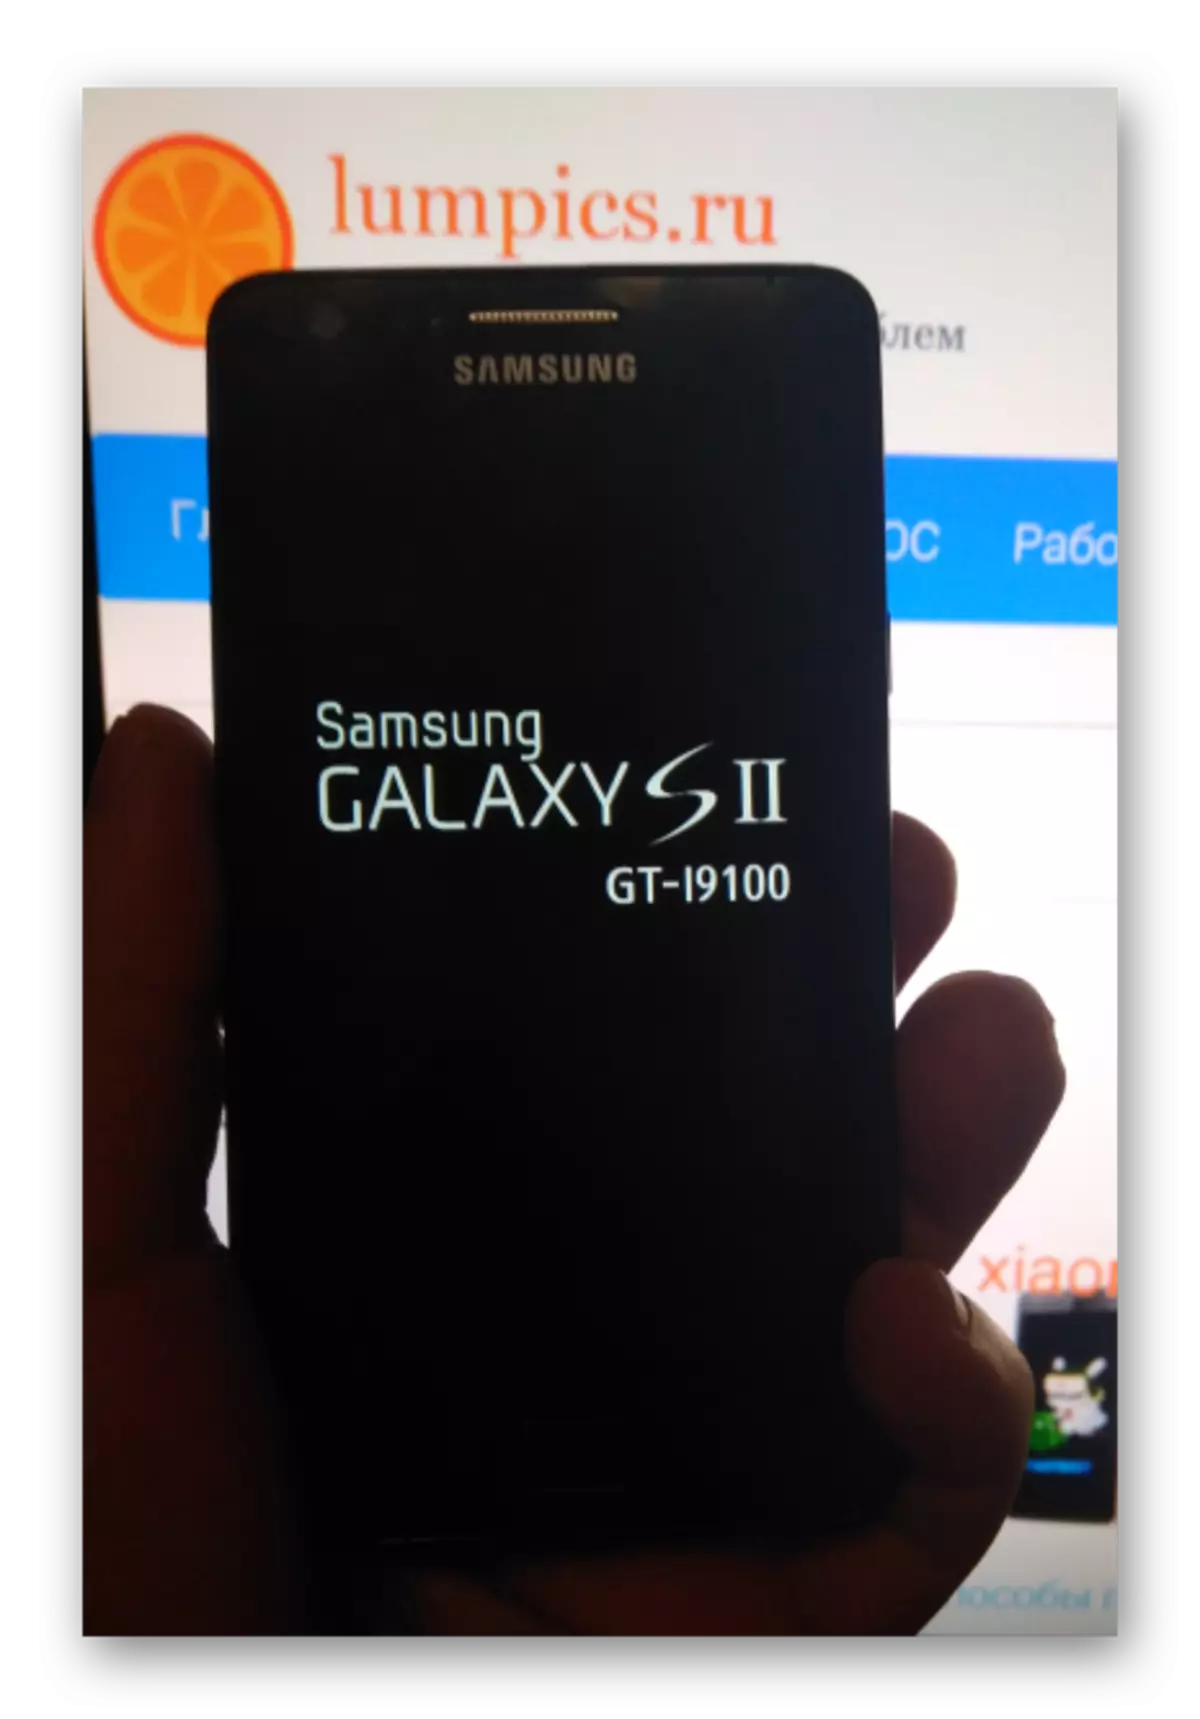 Sạc pin Samsung Galaxy S 2 GT-I9100 trước khi đặt lại và nâng cấp